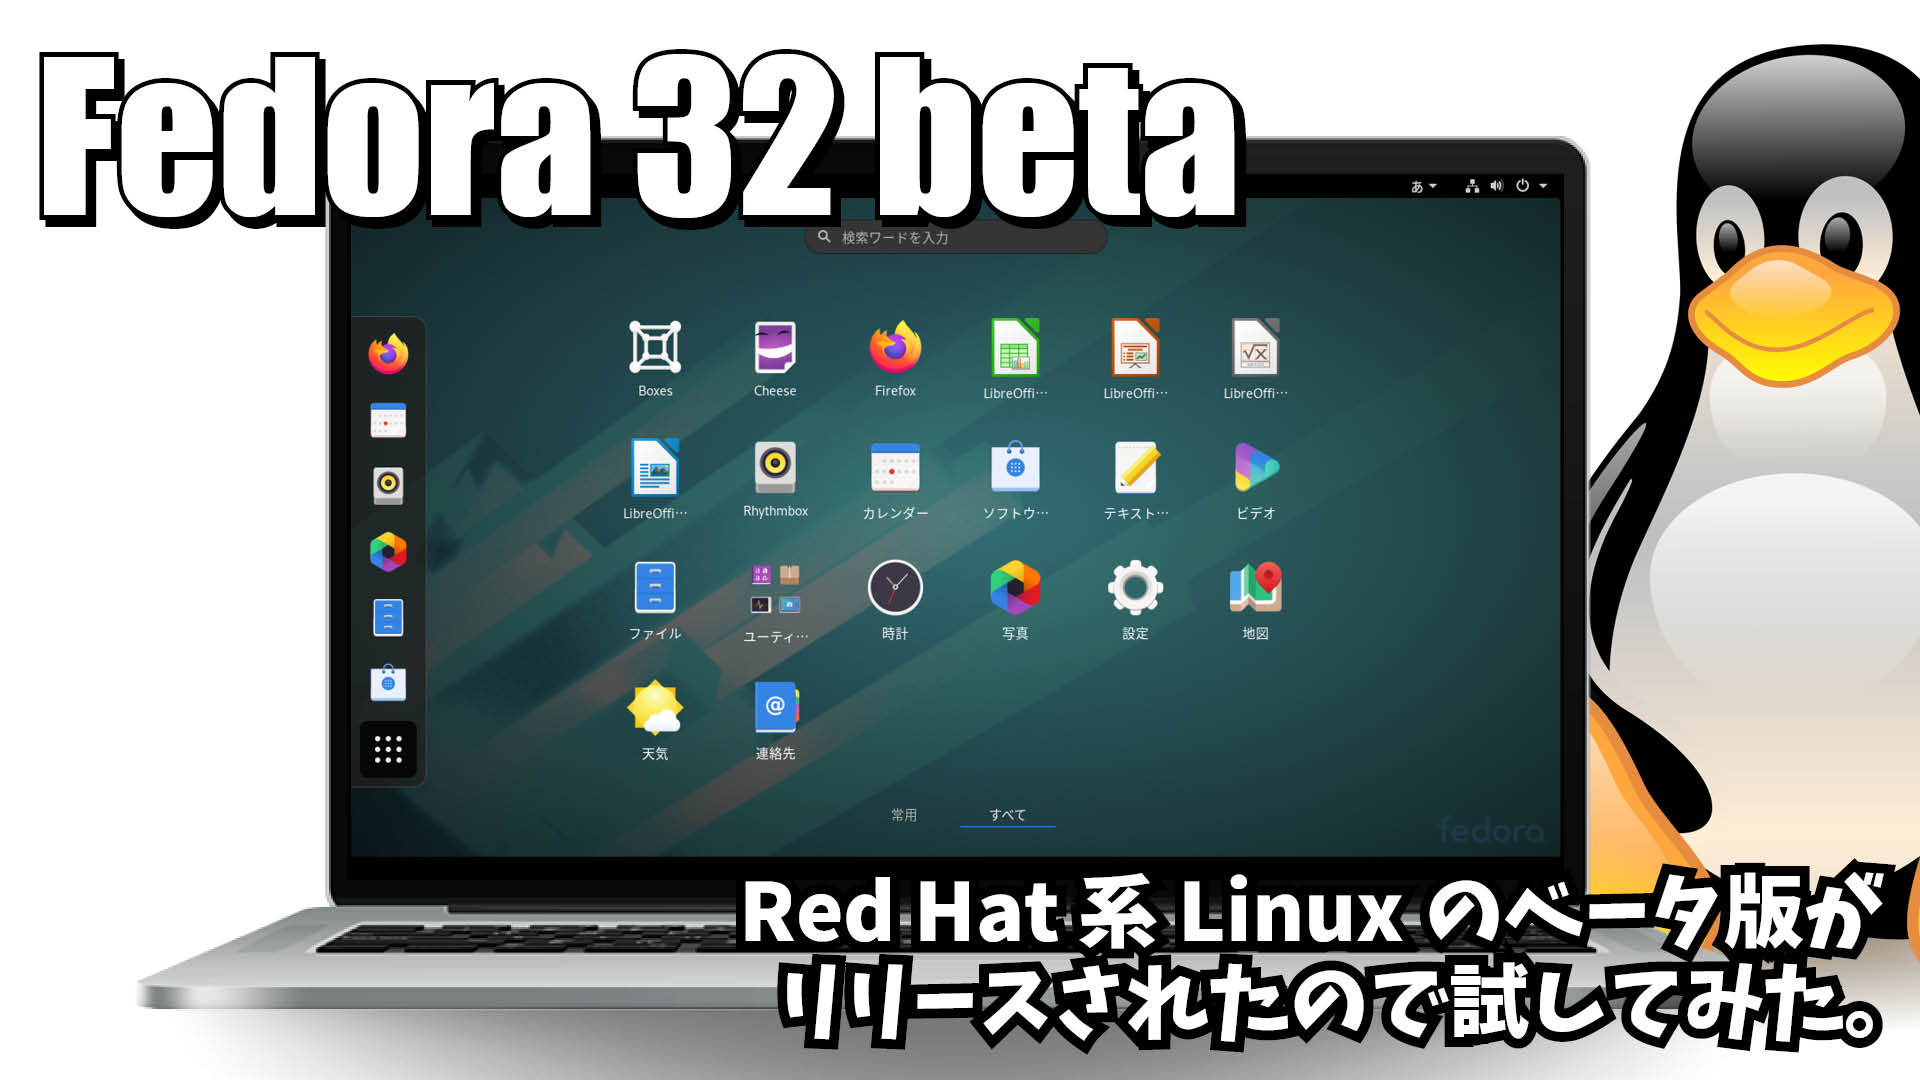 Fedora 32 beta: Red Hat 系Linuxのベータ版がリリースされたので試してみた。